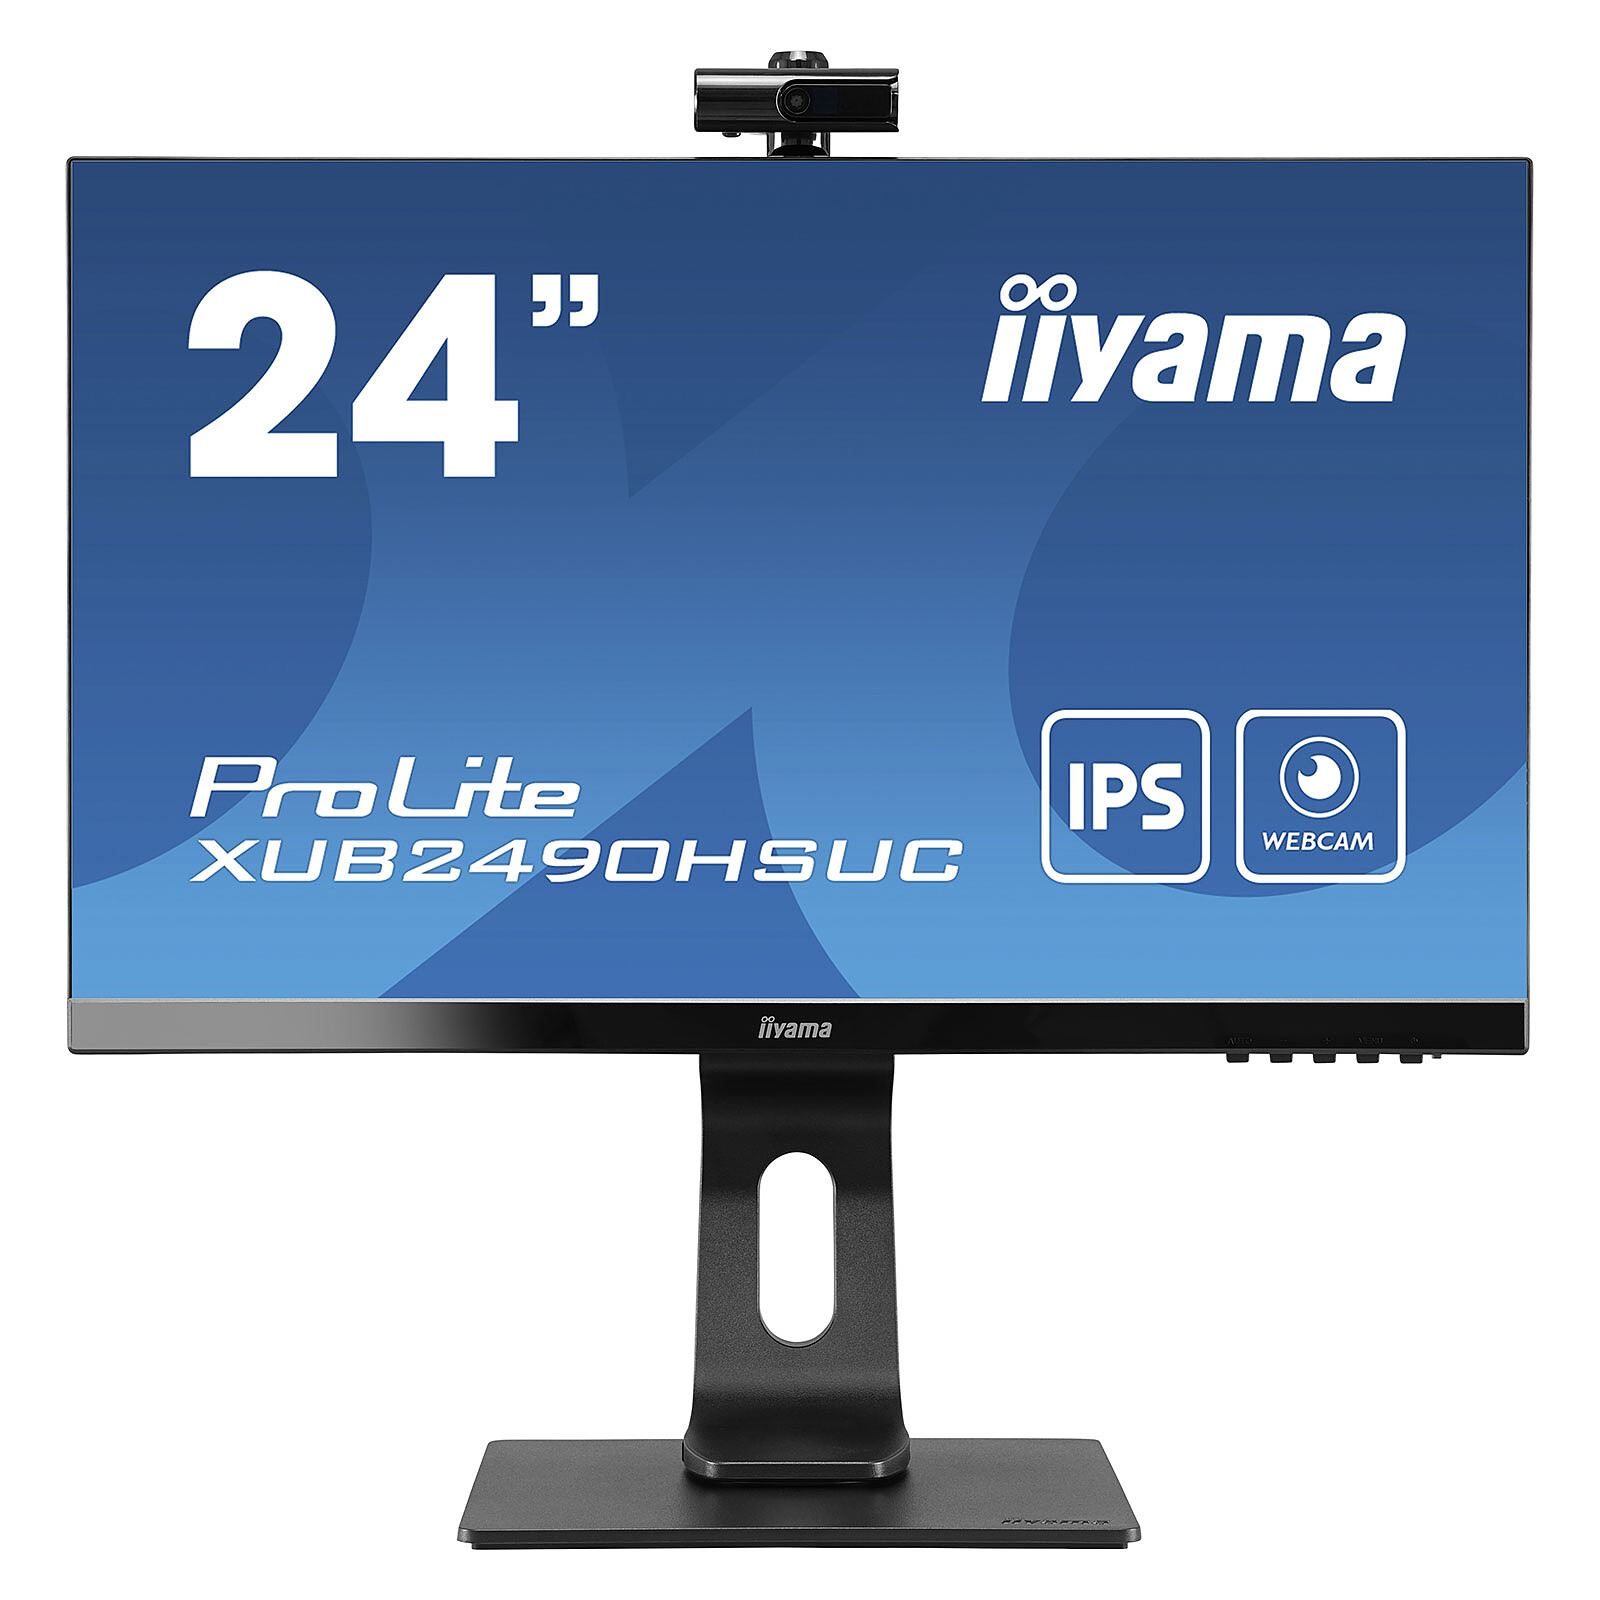 Grosbill Ecran PC Iiyama XUB2490HSUH-B1 23.8" FHD/100Hz/IPS/4ms/Webcam